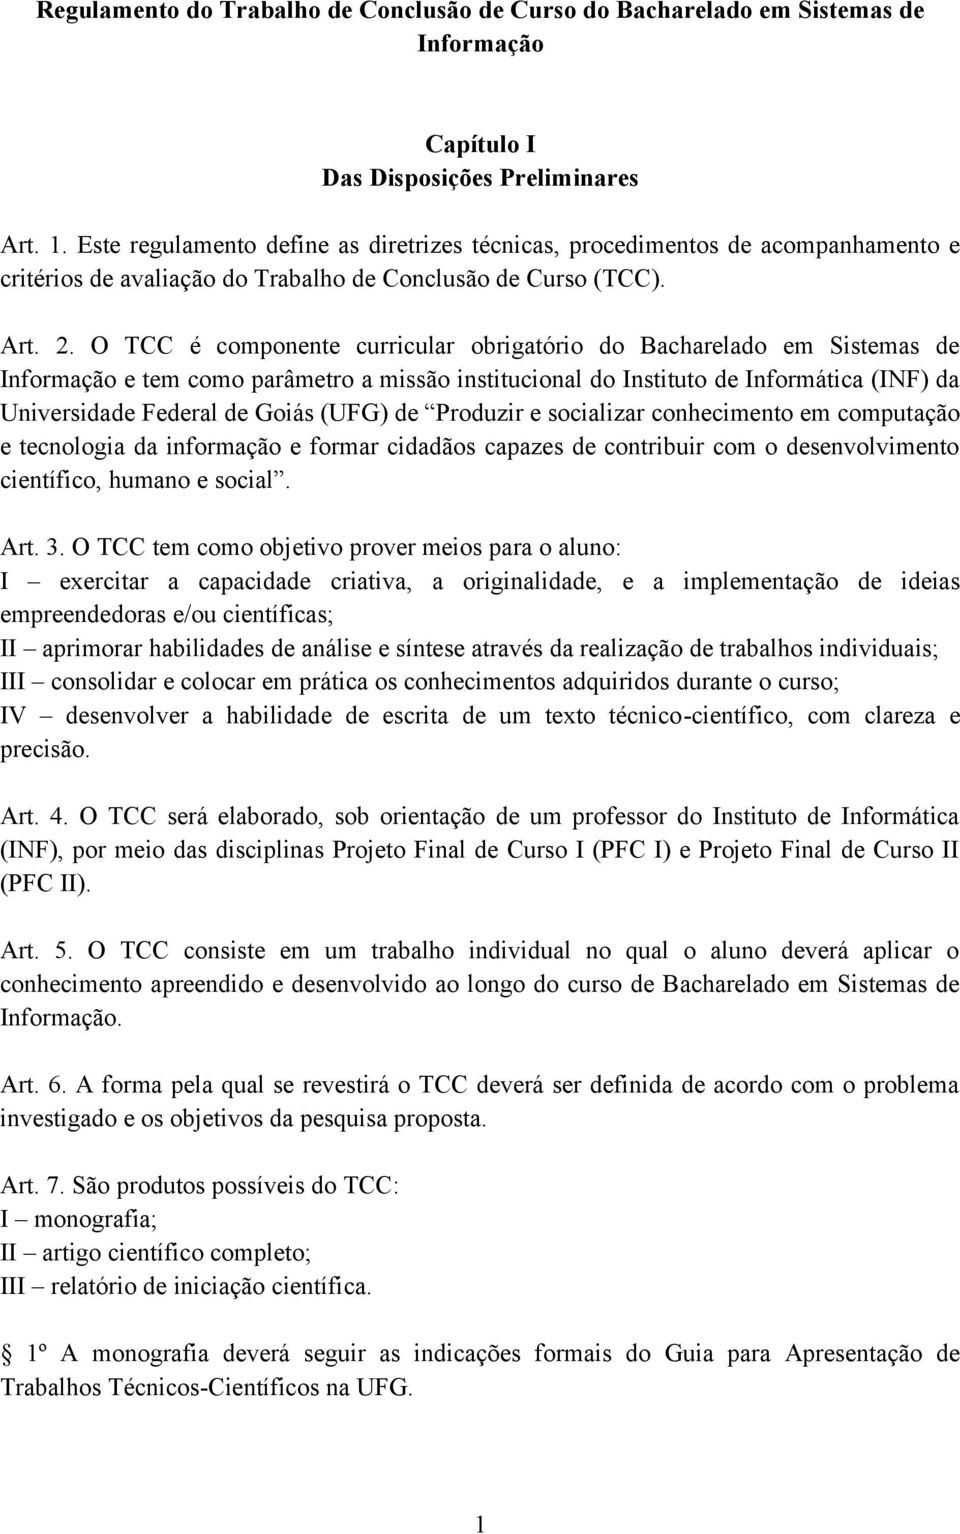 O TCC é componente curricular obrigatório do Bacharelado em Sistemas de Informação e tem como parâmetro a missão institucional do Instituto de Informática (INF) da Universidade Federal de Goiás (UFG)